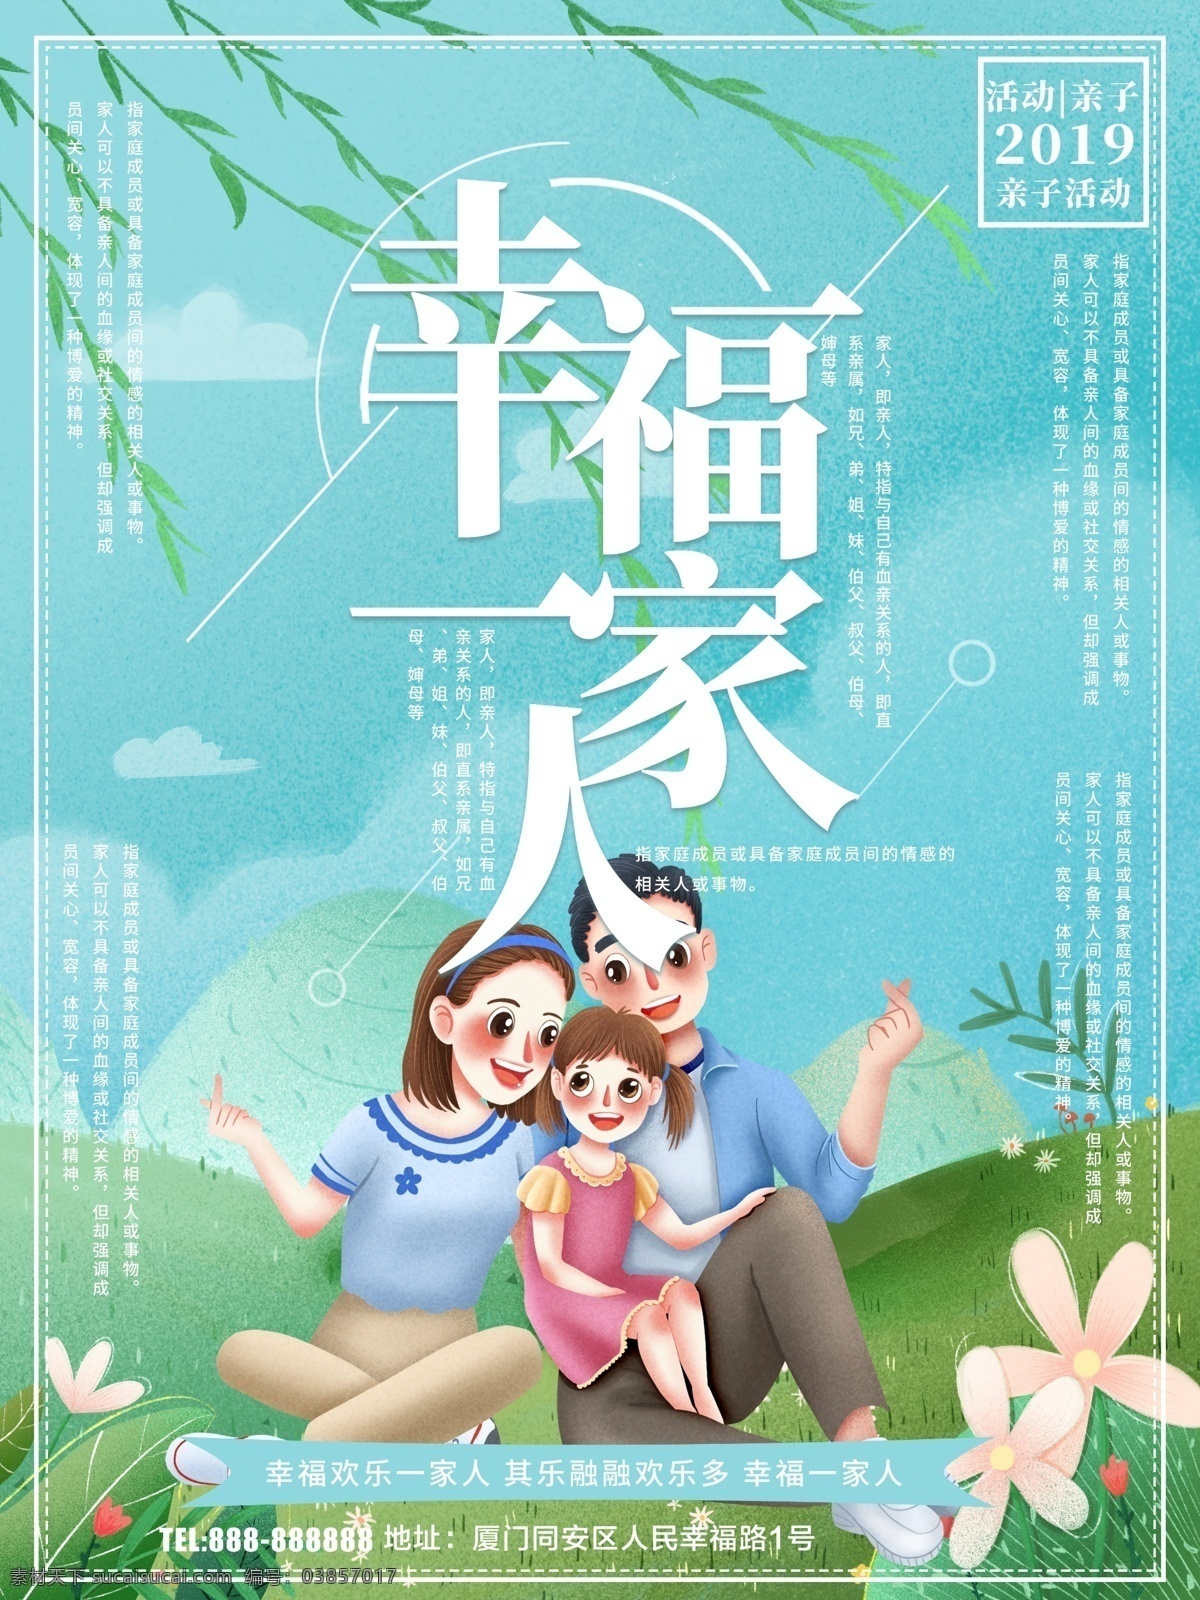 幸福一家人 幸福家庭 幸福生活 家庭和睦 幸福一家 幸福中国 美好家庭 和谐中国 社区海报 和谐家庭 社会和谐 文明社会